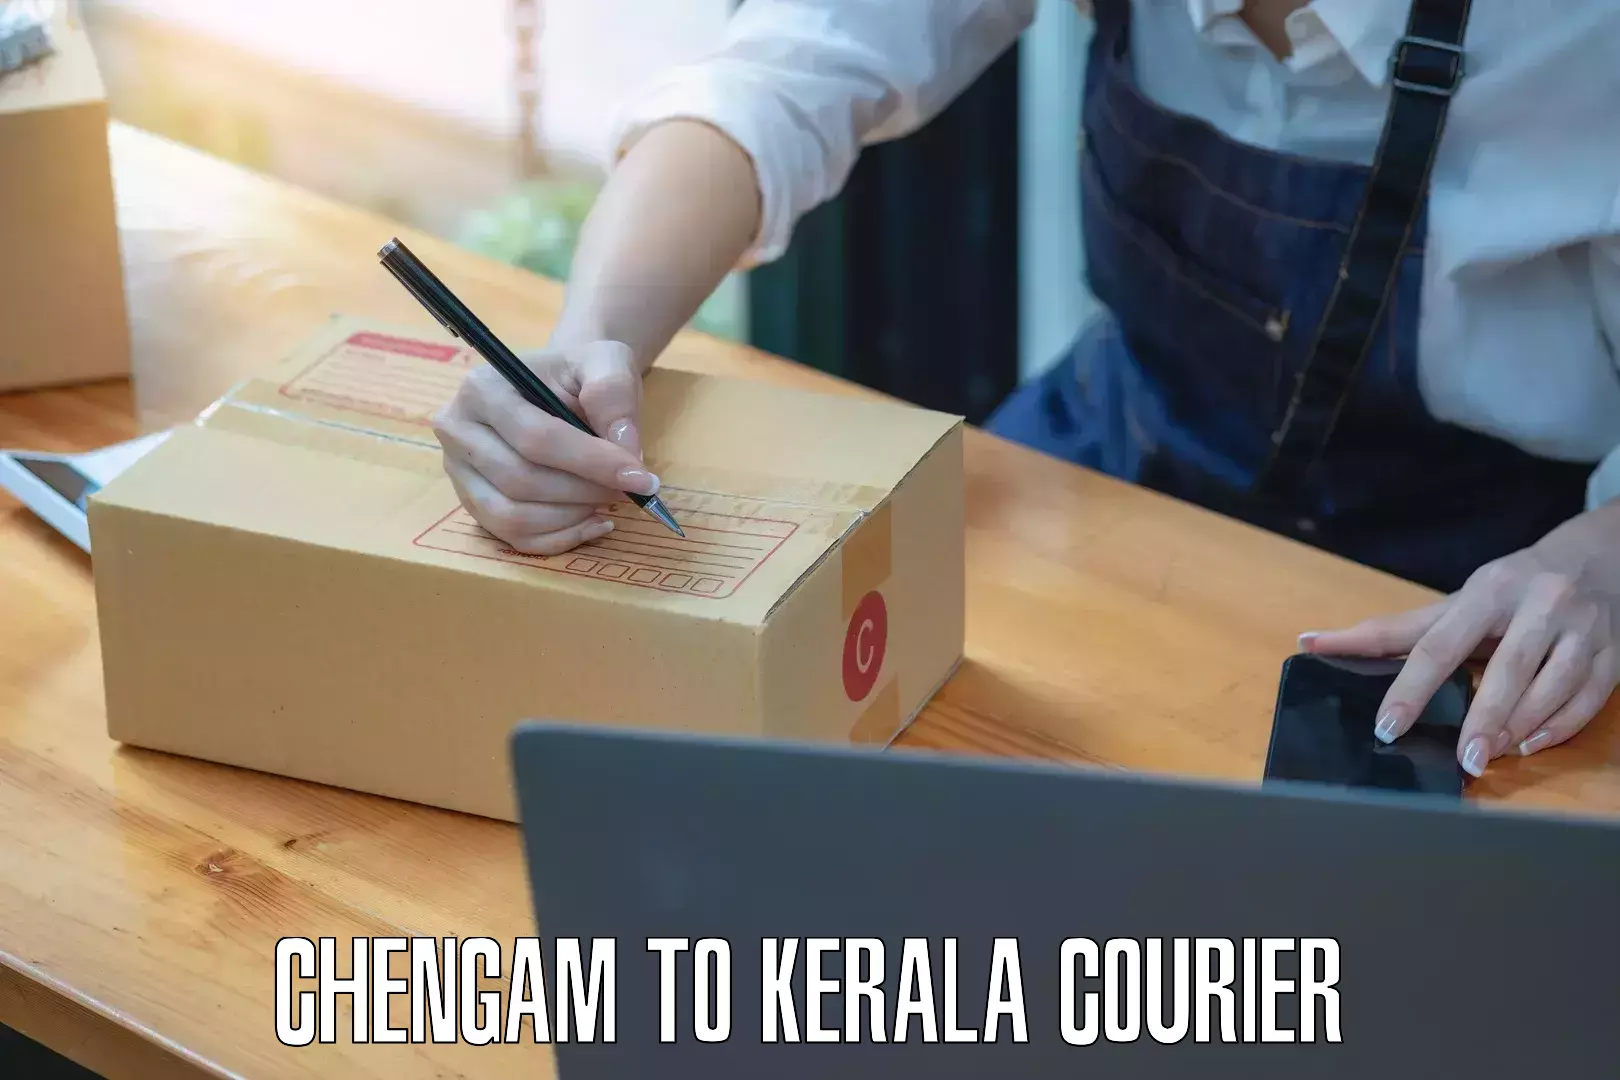 Return courier service Chengam to Manthuka